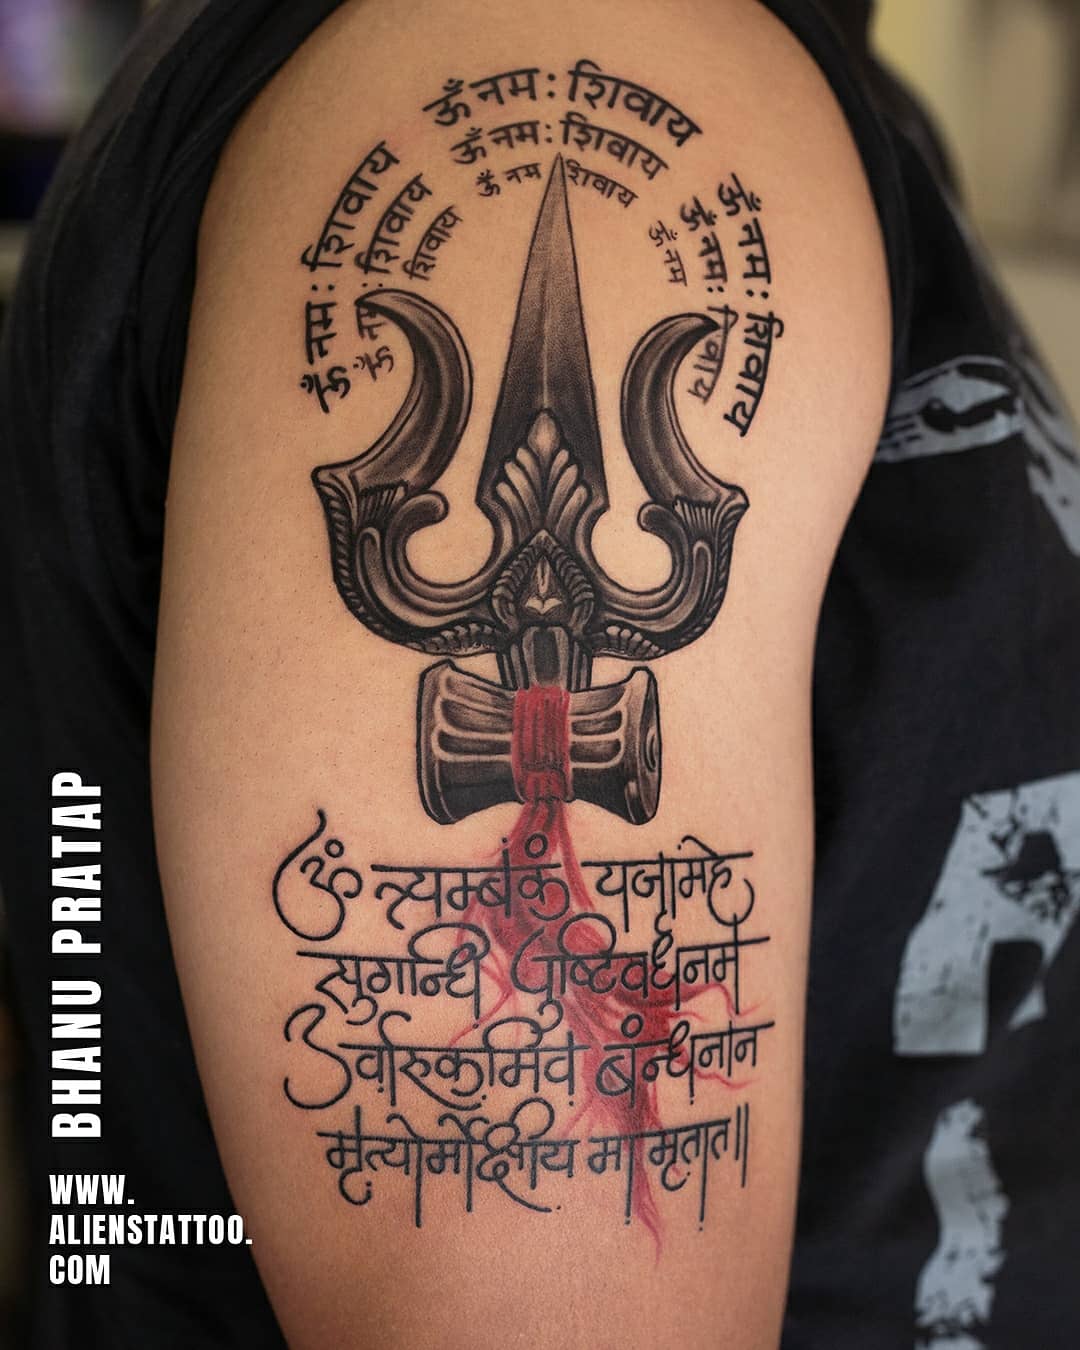 Shweta thakur - Shiva tattoo design........ #shivatattoo #mahadev #shiva  #mahakal #har #harharmahadev #shiv #shivshankar #shivay #bholenath #shivaay  #ke #lordshiva #tattoo #mahakaleshwar #tattoos #shivbhakt #omtattoo #bhole  #aghori #mahadeva #mahakaal ...